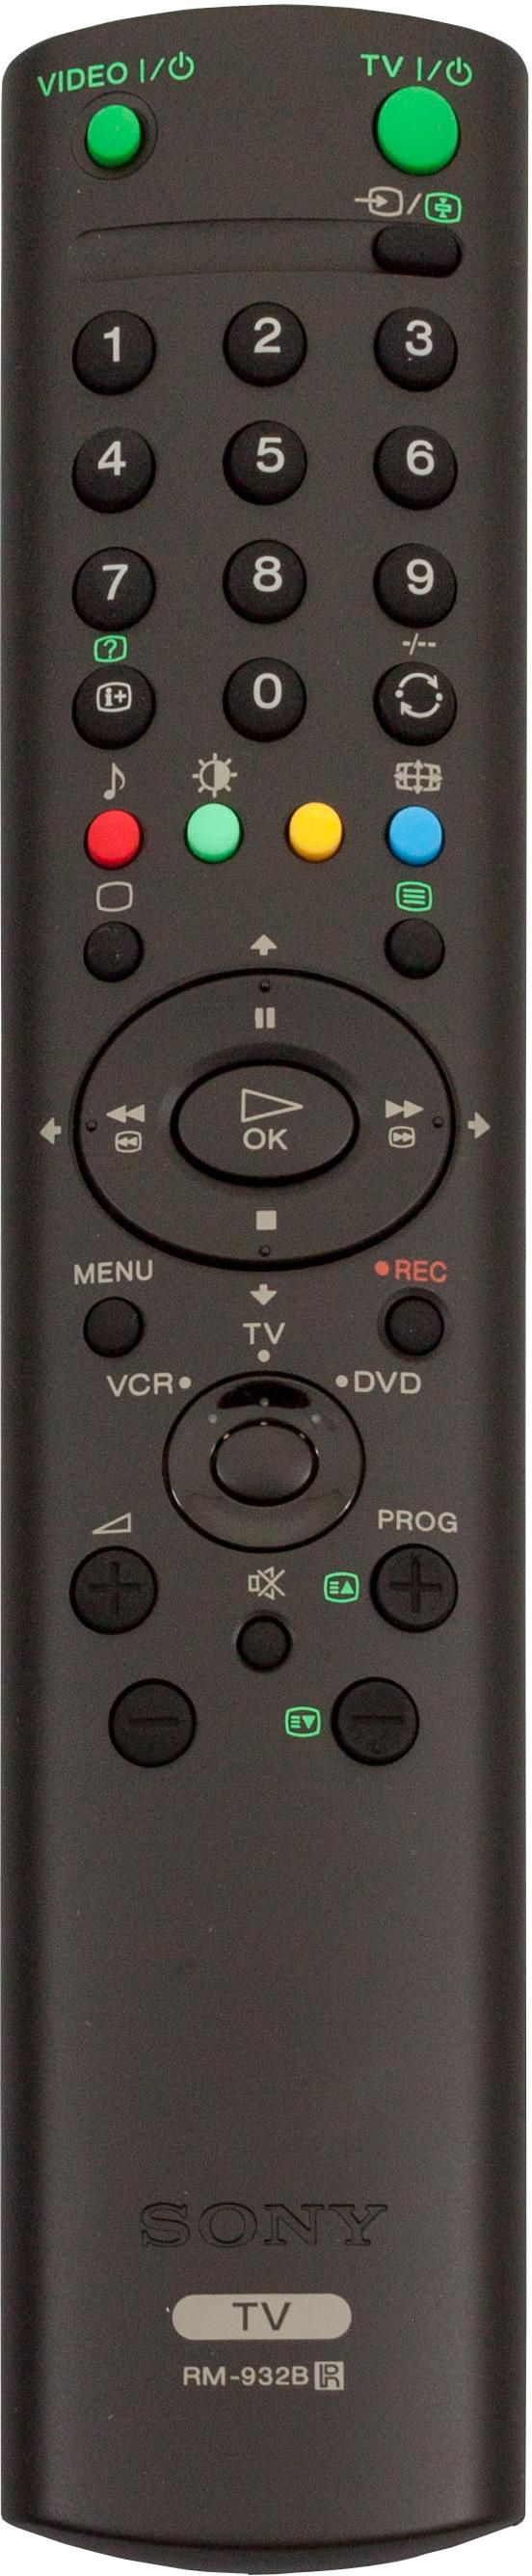 Mando A Distancia Universal Control Para Tv Sony Wega/ Sony Trinitron